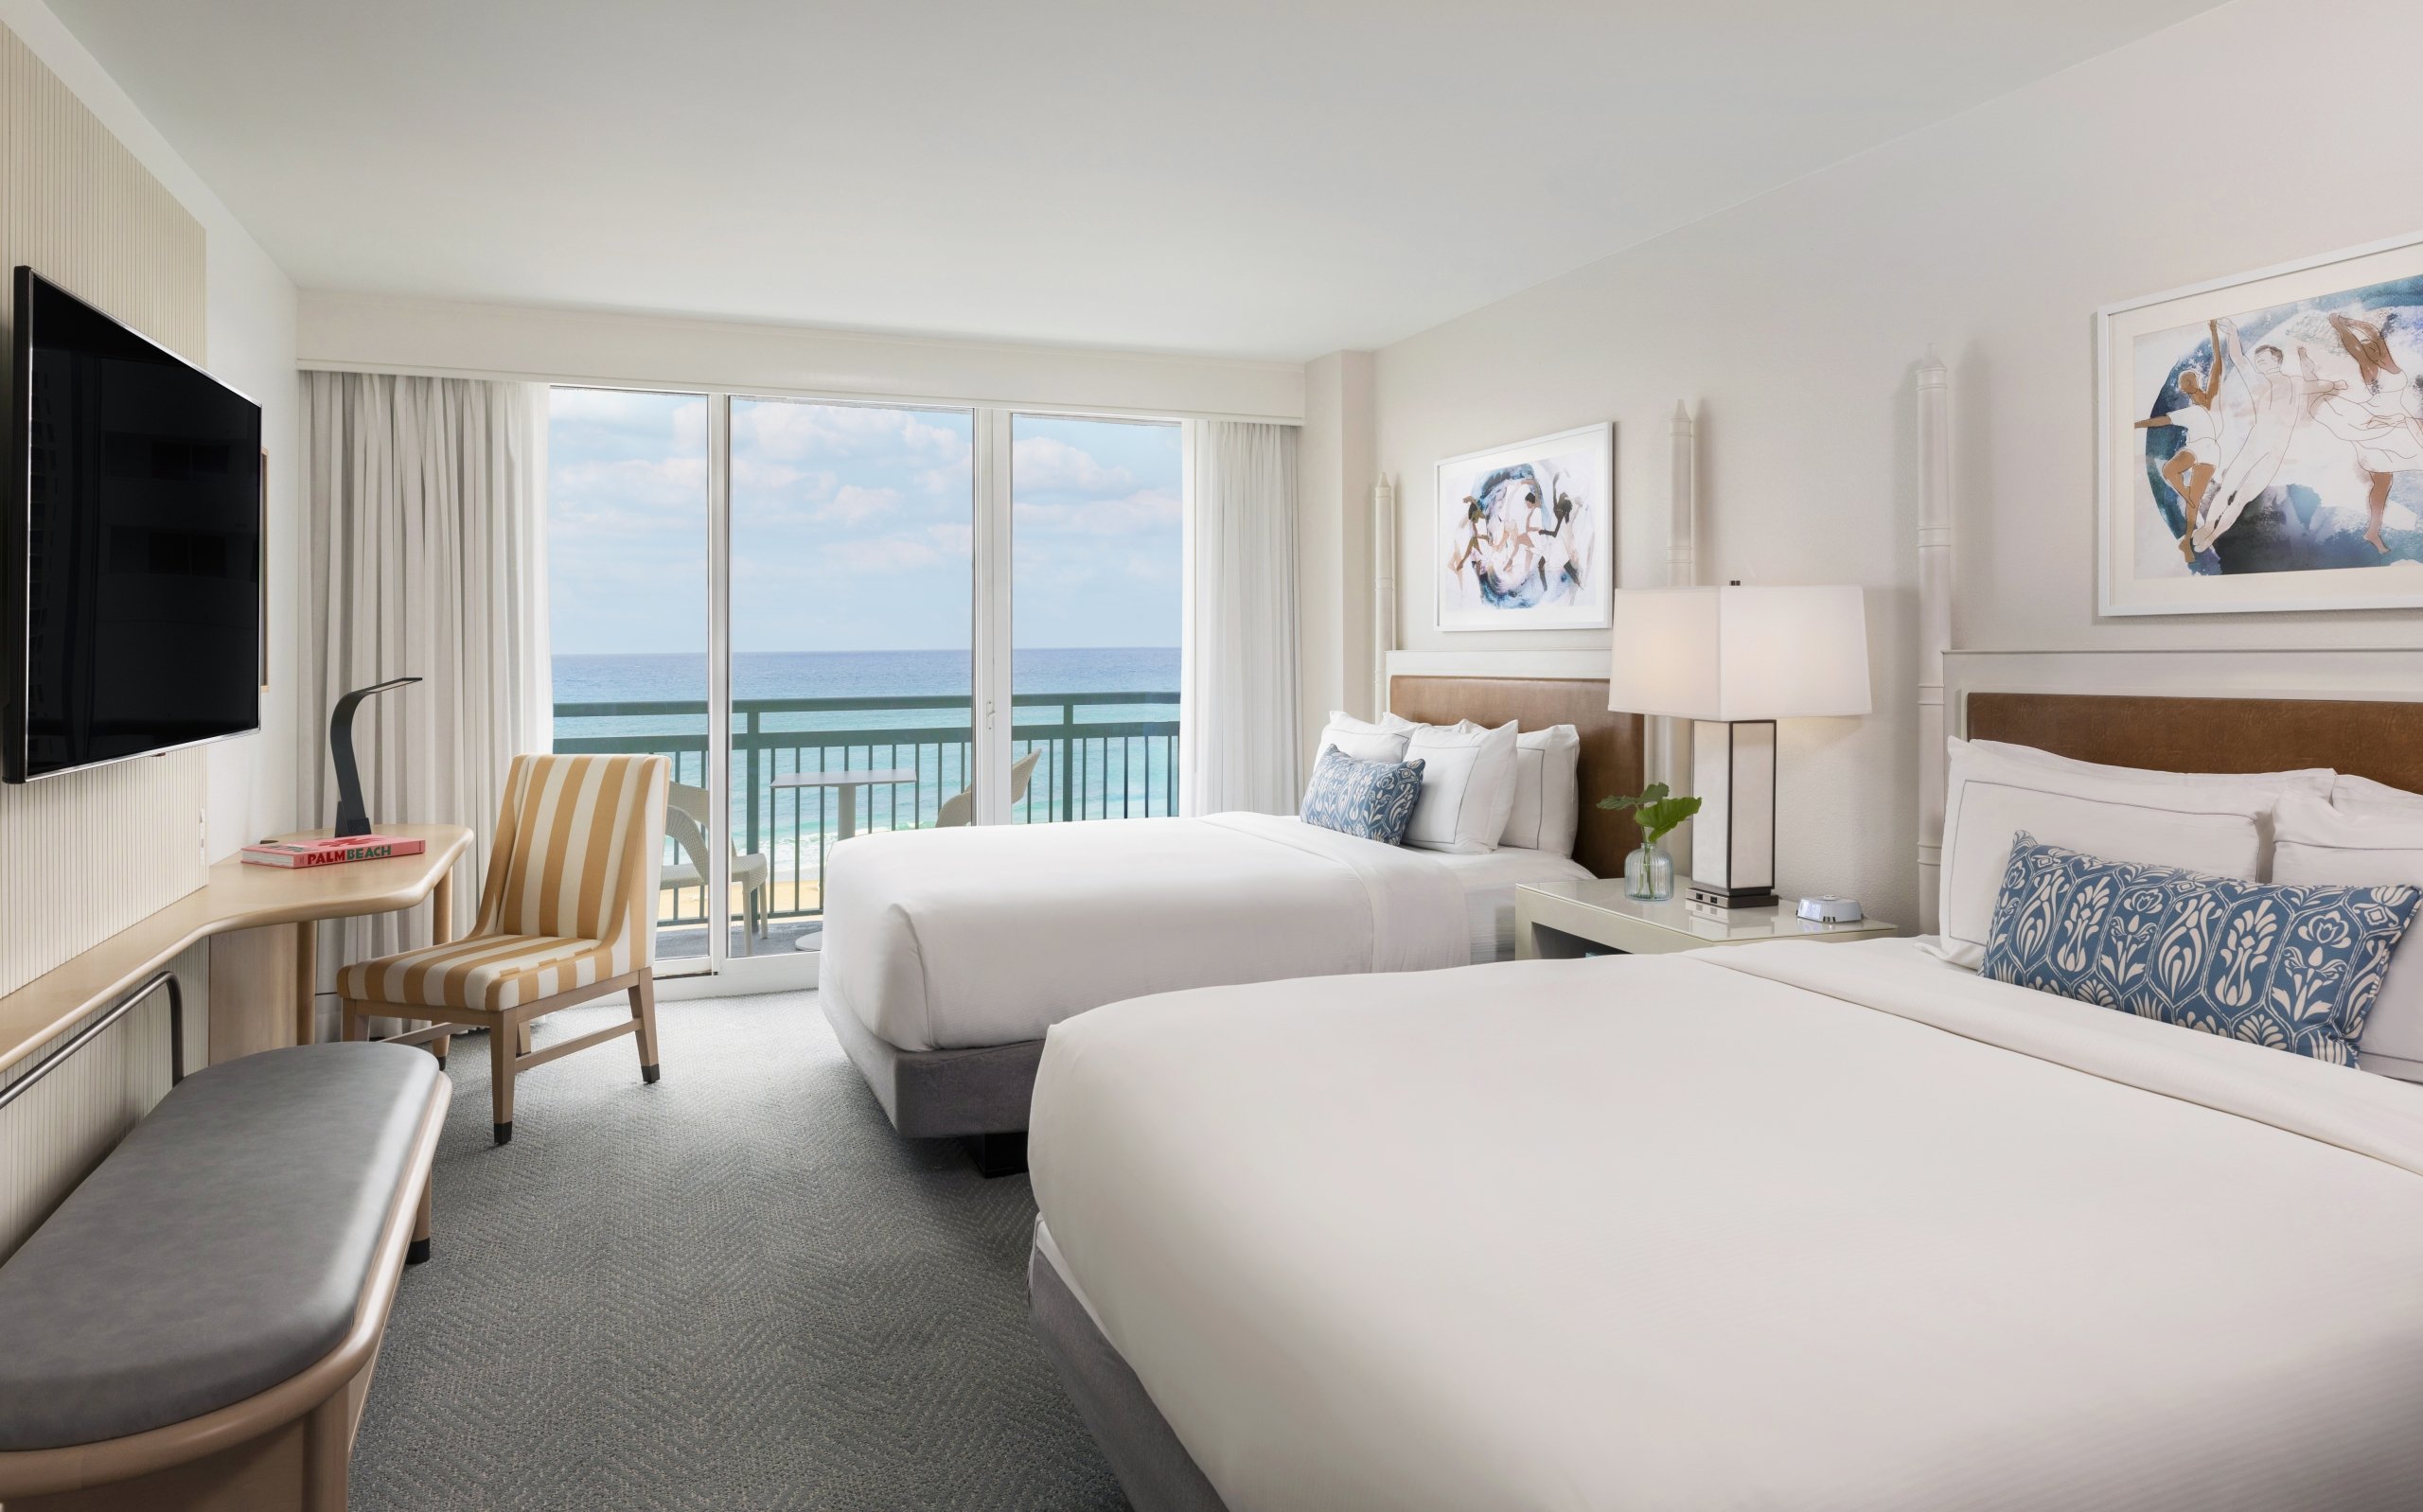 Elegant room with premium amenities in The Singer Oceanfront Resort